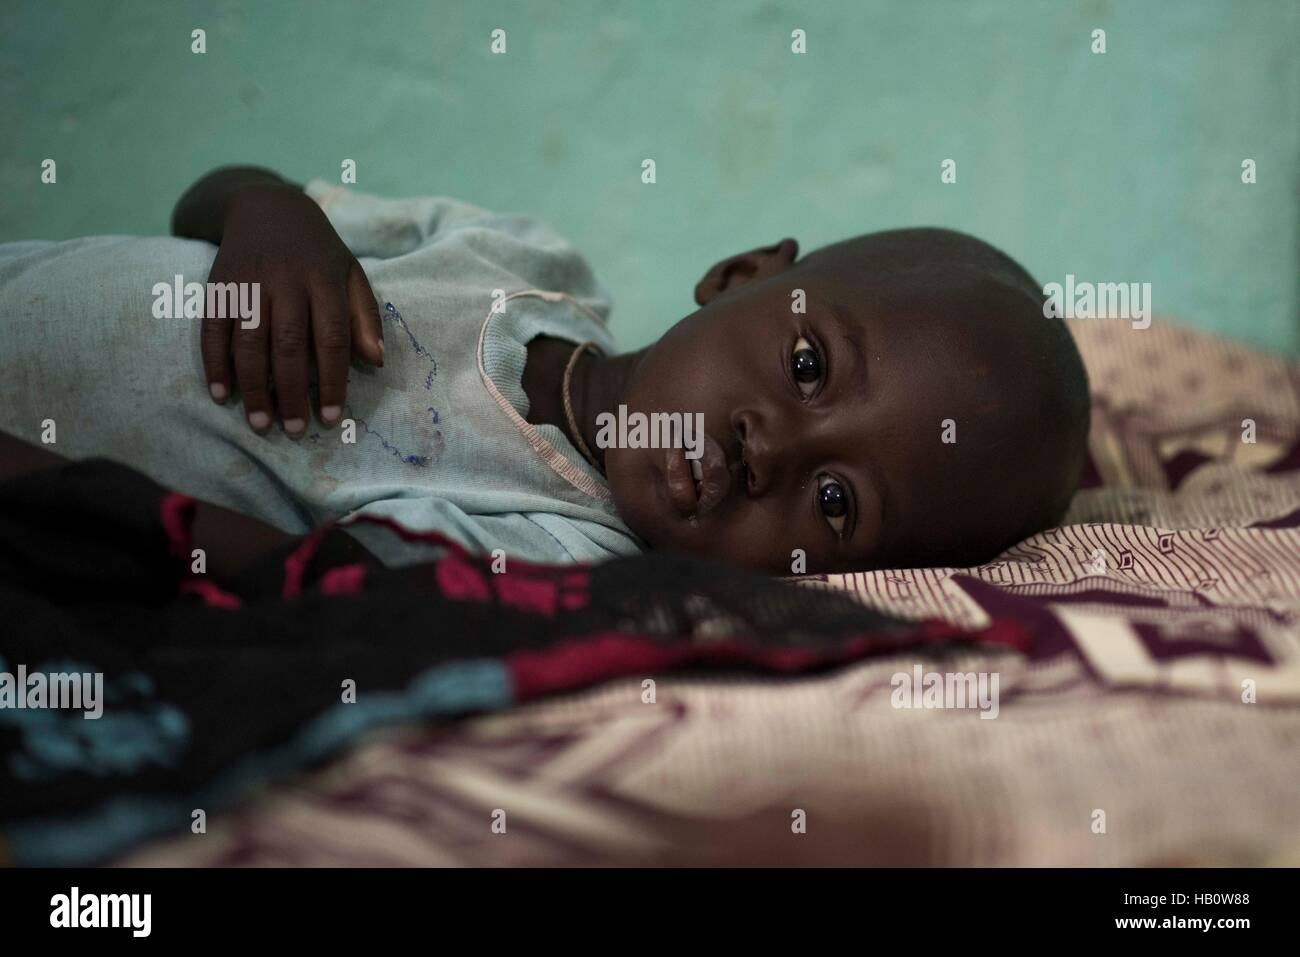 DIOILA - MALI: un bambino che soffre di malnutrizione giace su un letto a intensivo unità nutrizionale dell'ospedale Dioila il 7 novembre 2016 in Dioil Foto Stock